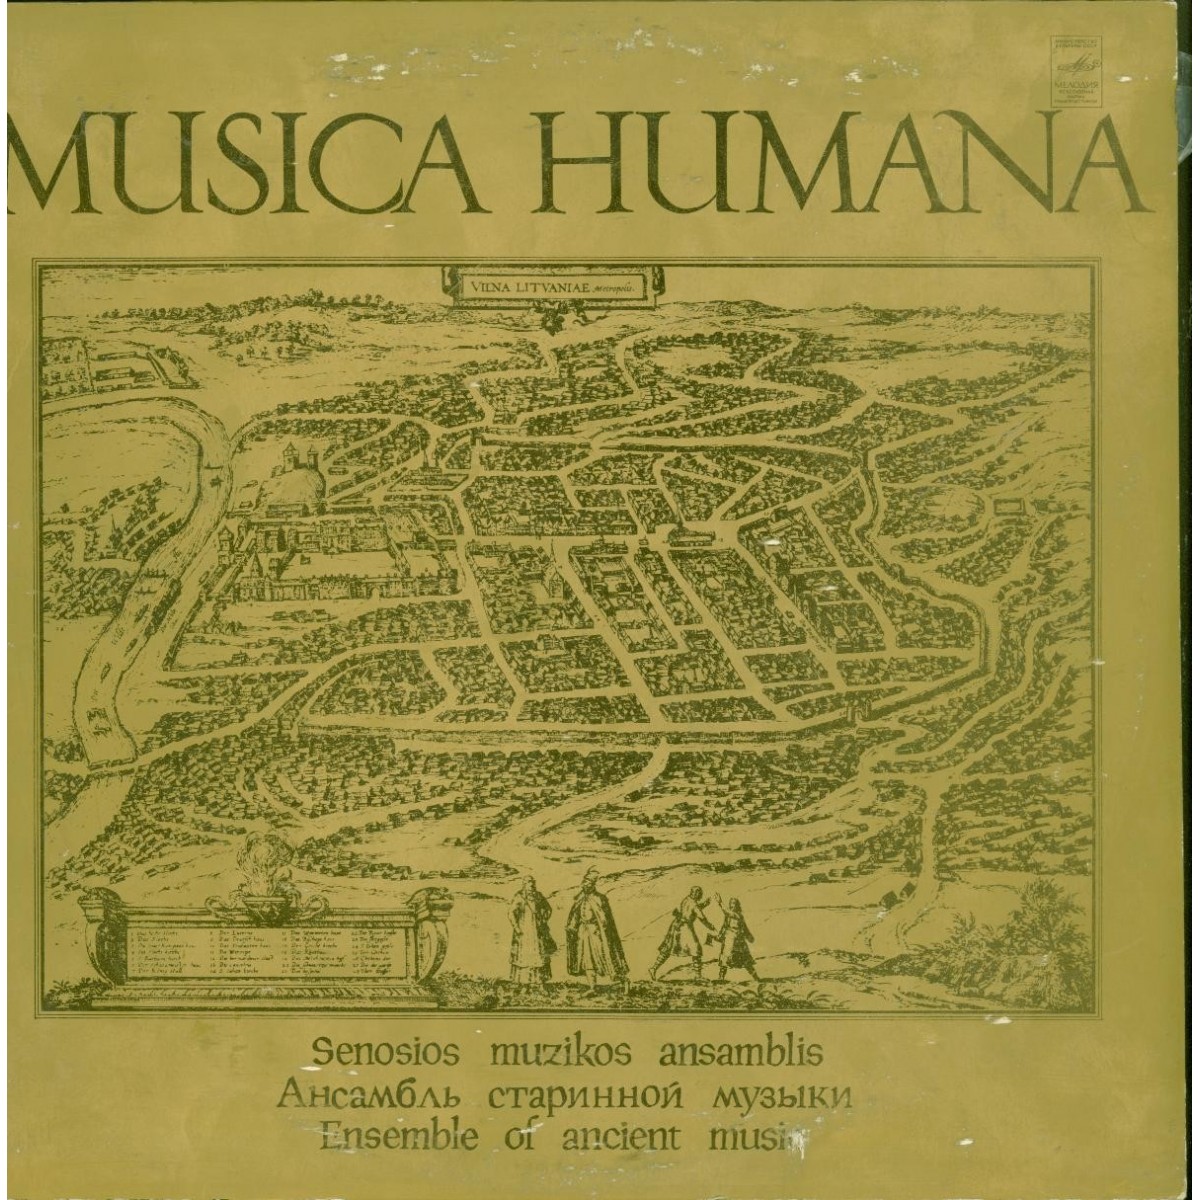 АНСАМБЛЬ СТАРИННОЙ МУЗЫКИ «MUSICA HUMANA» Государственной филармонии Литовской ССР